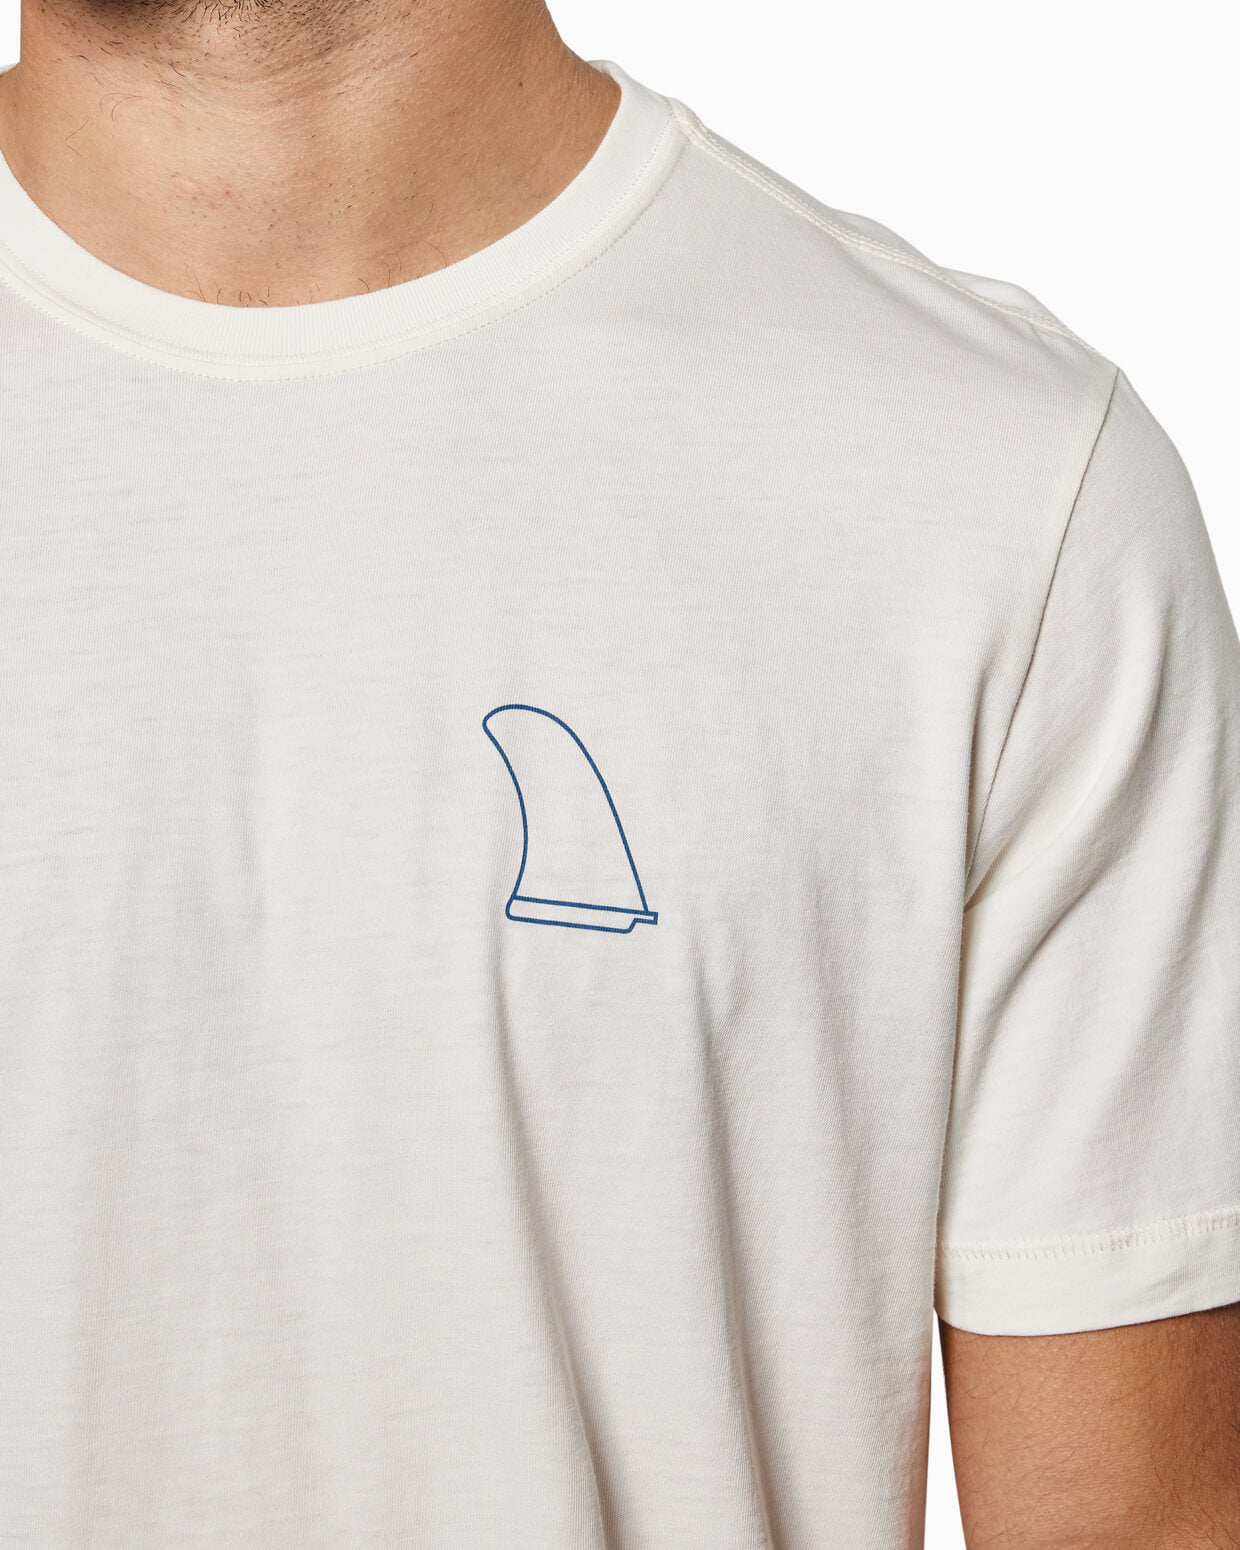 Jack Fin | Short Sleeve T-Shirt